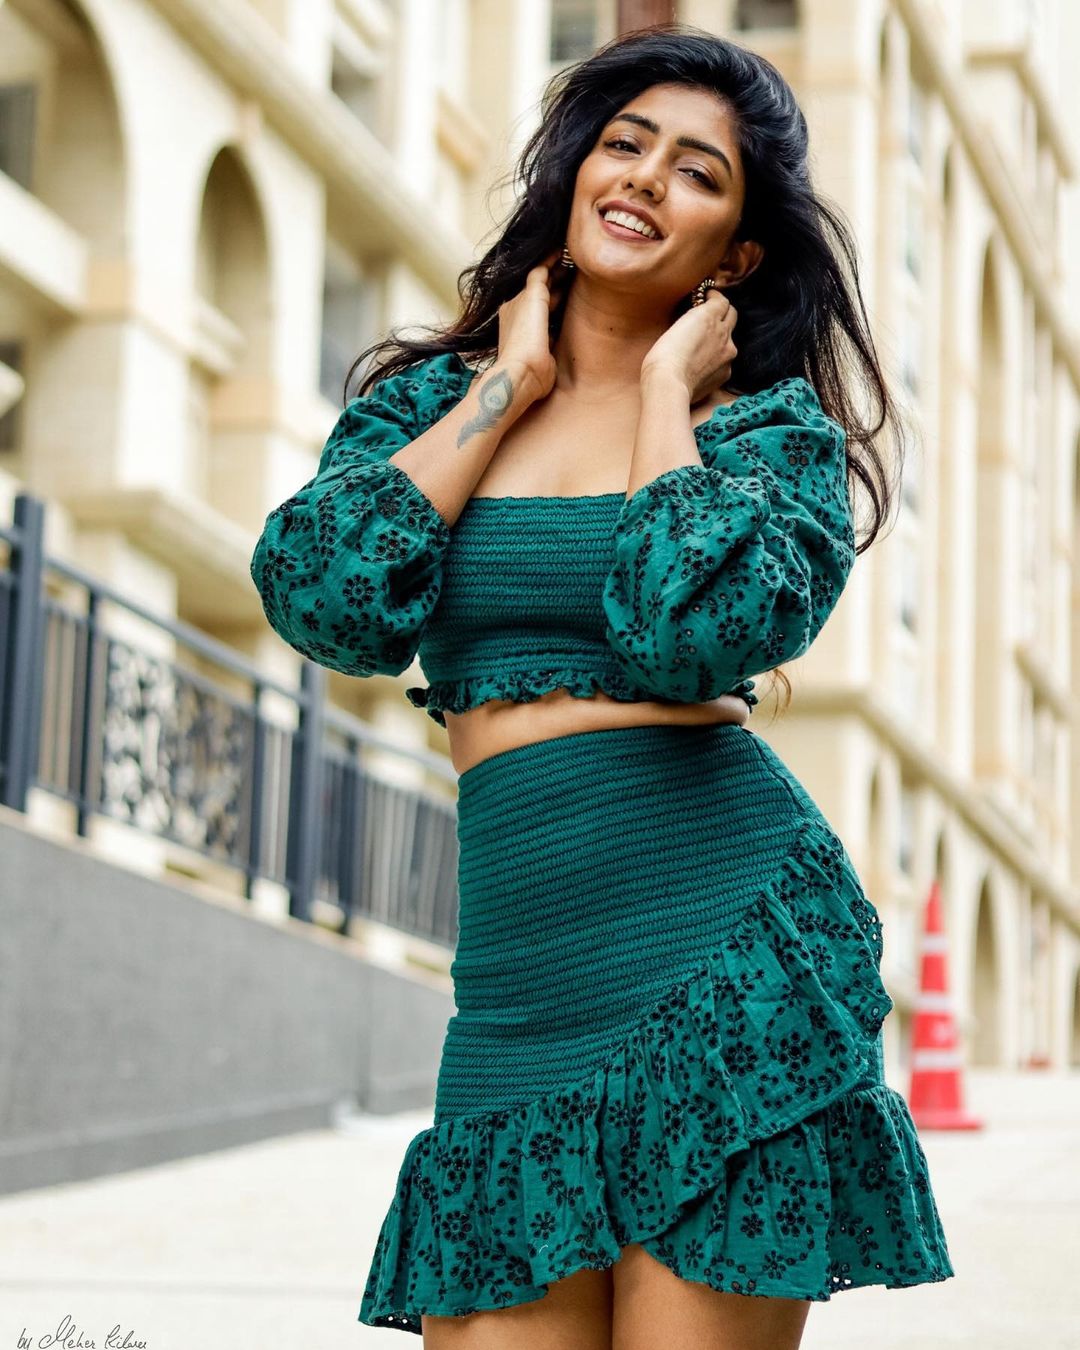 actress eesha rebba hot photos in saree and modern dress